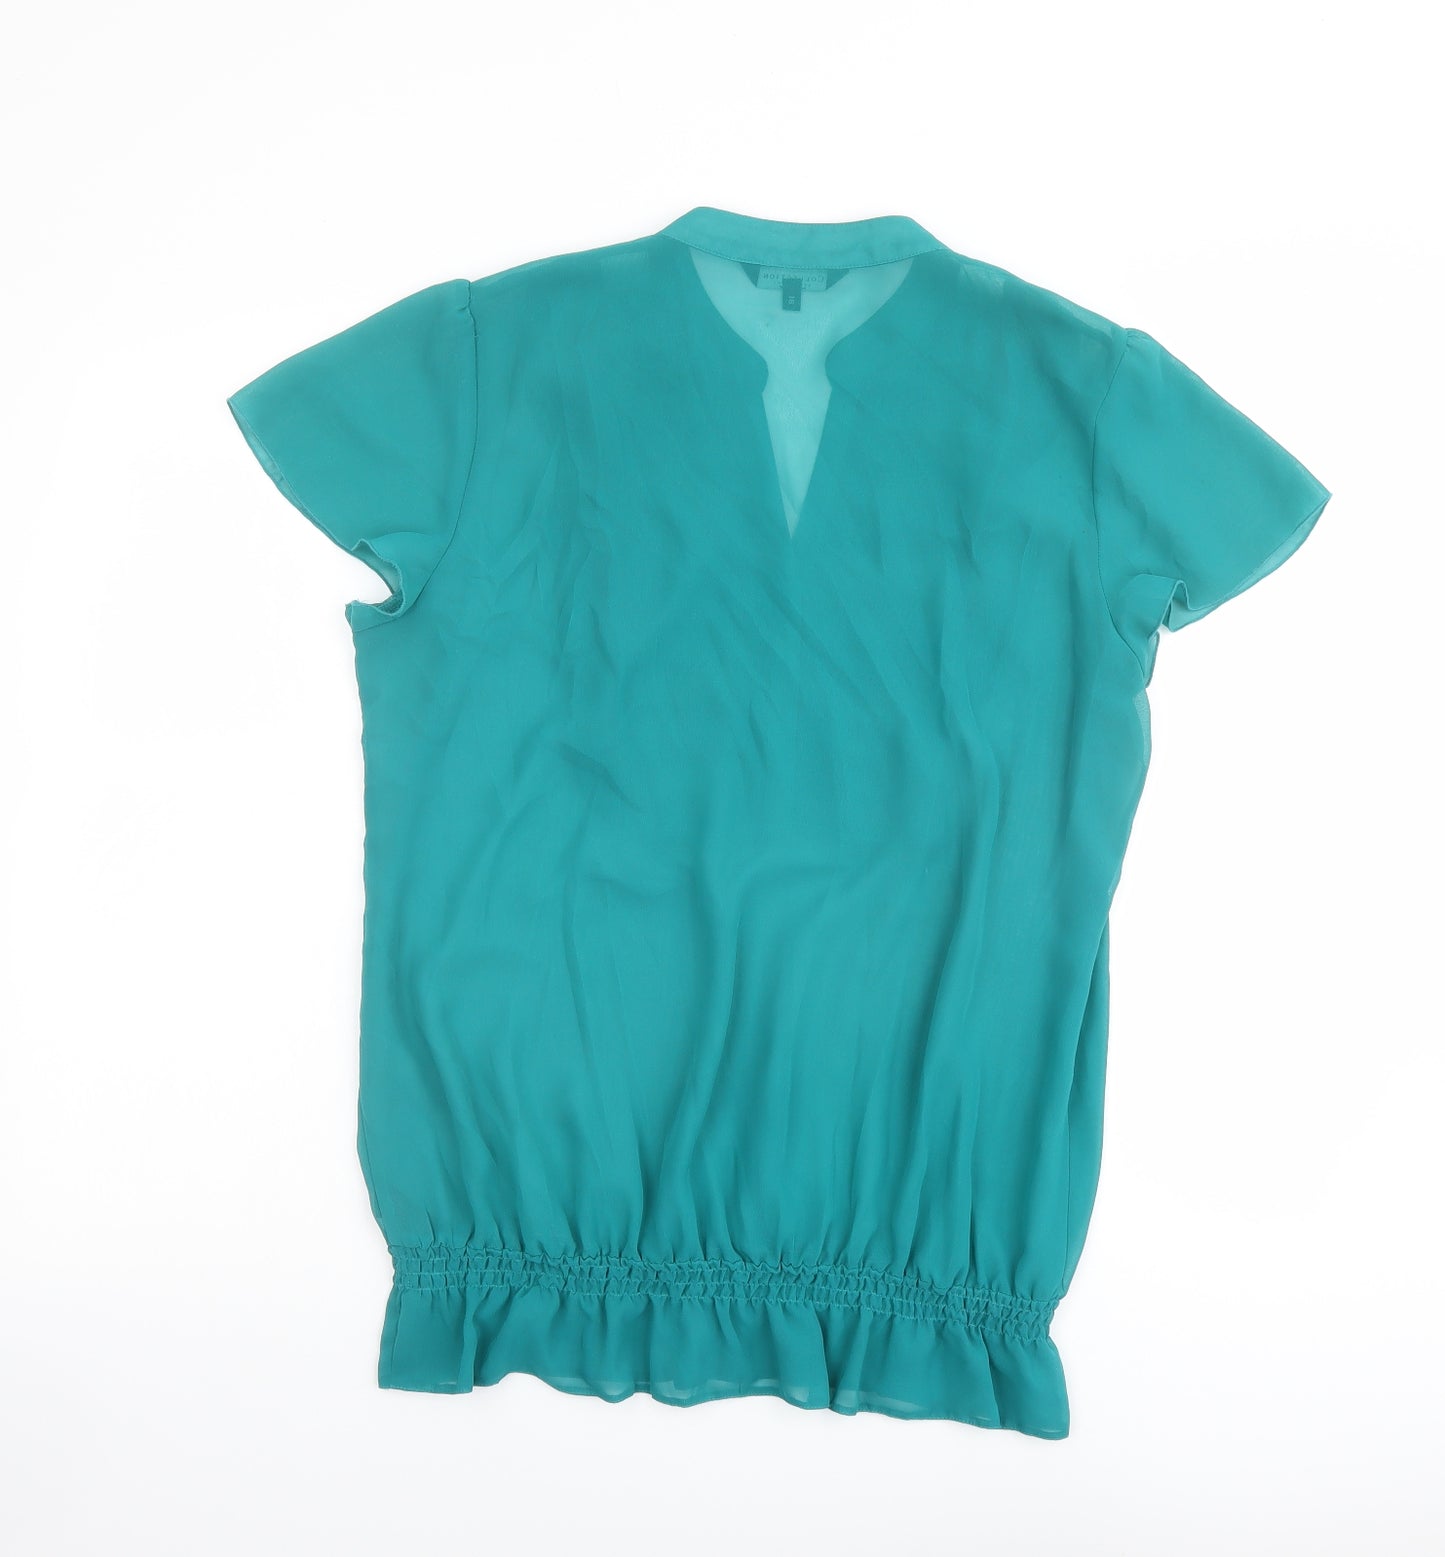 Debenhams Womens Green Polyester Basic Blouse Size 16 V-Neck